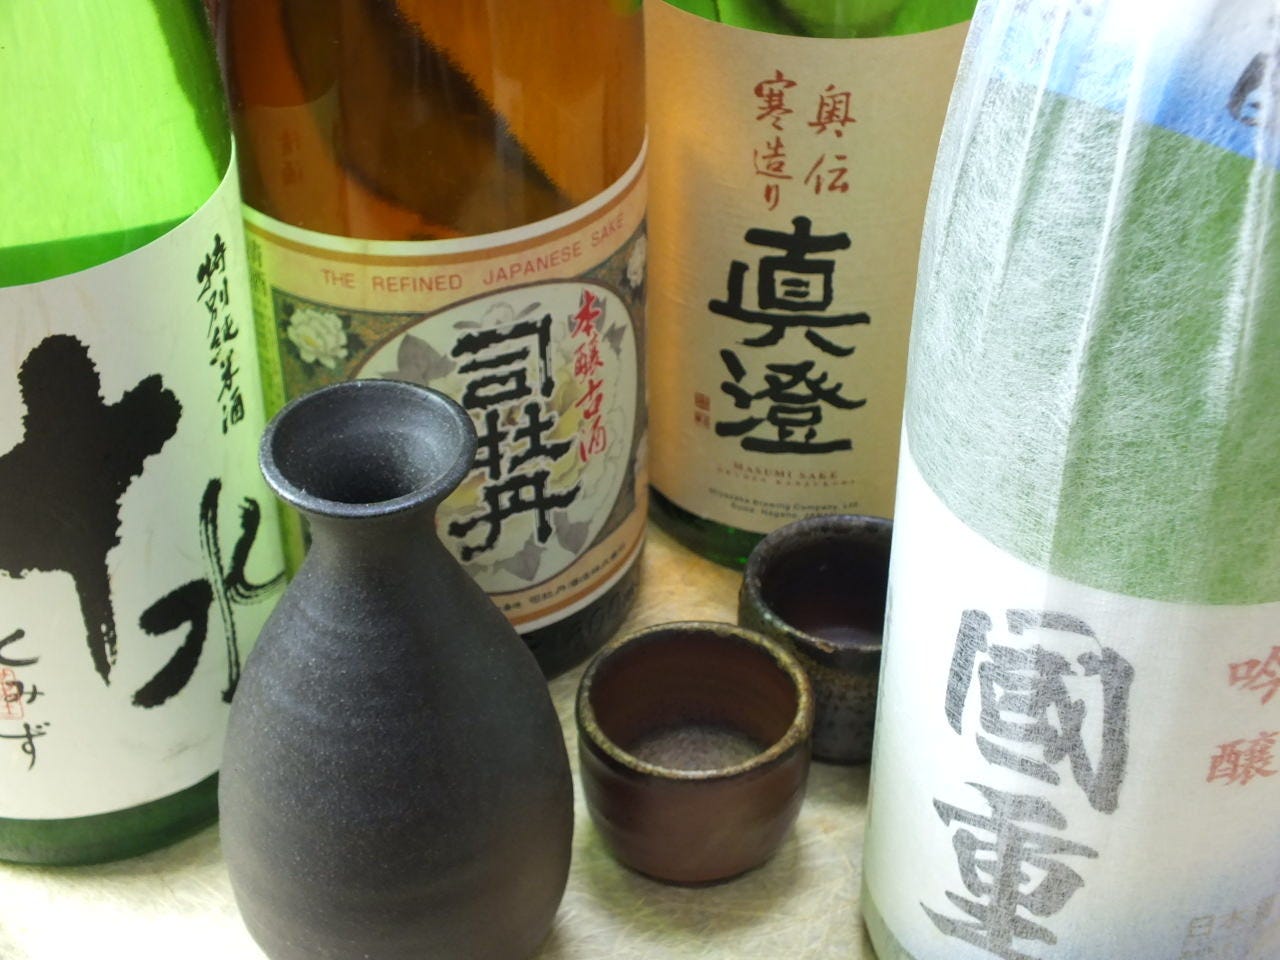 おすすめ日本酒